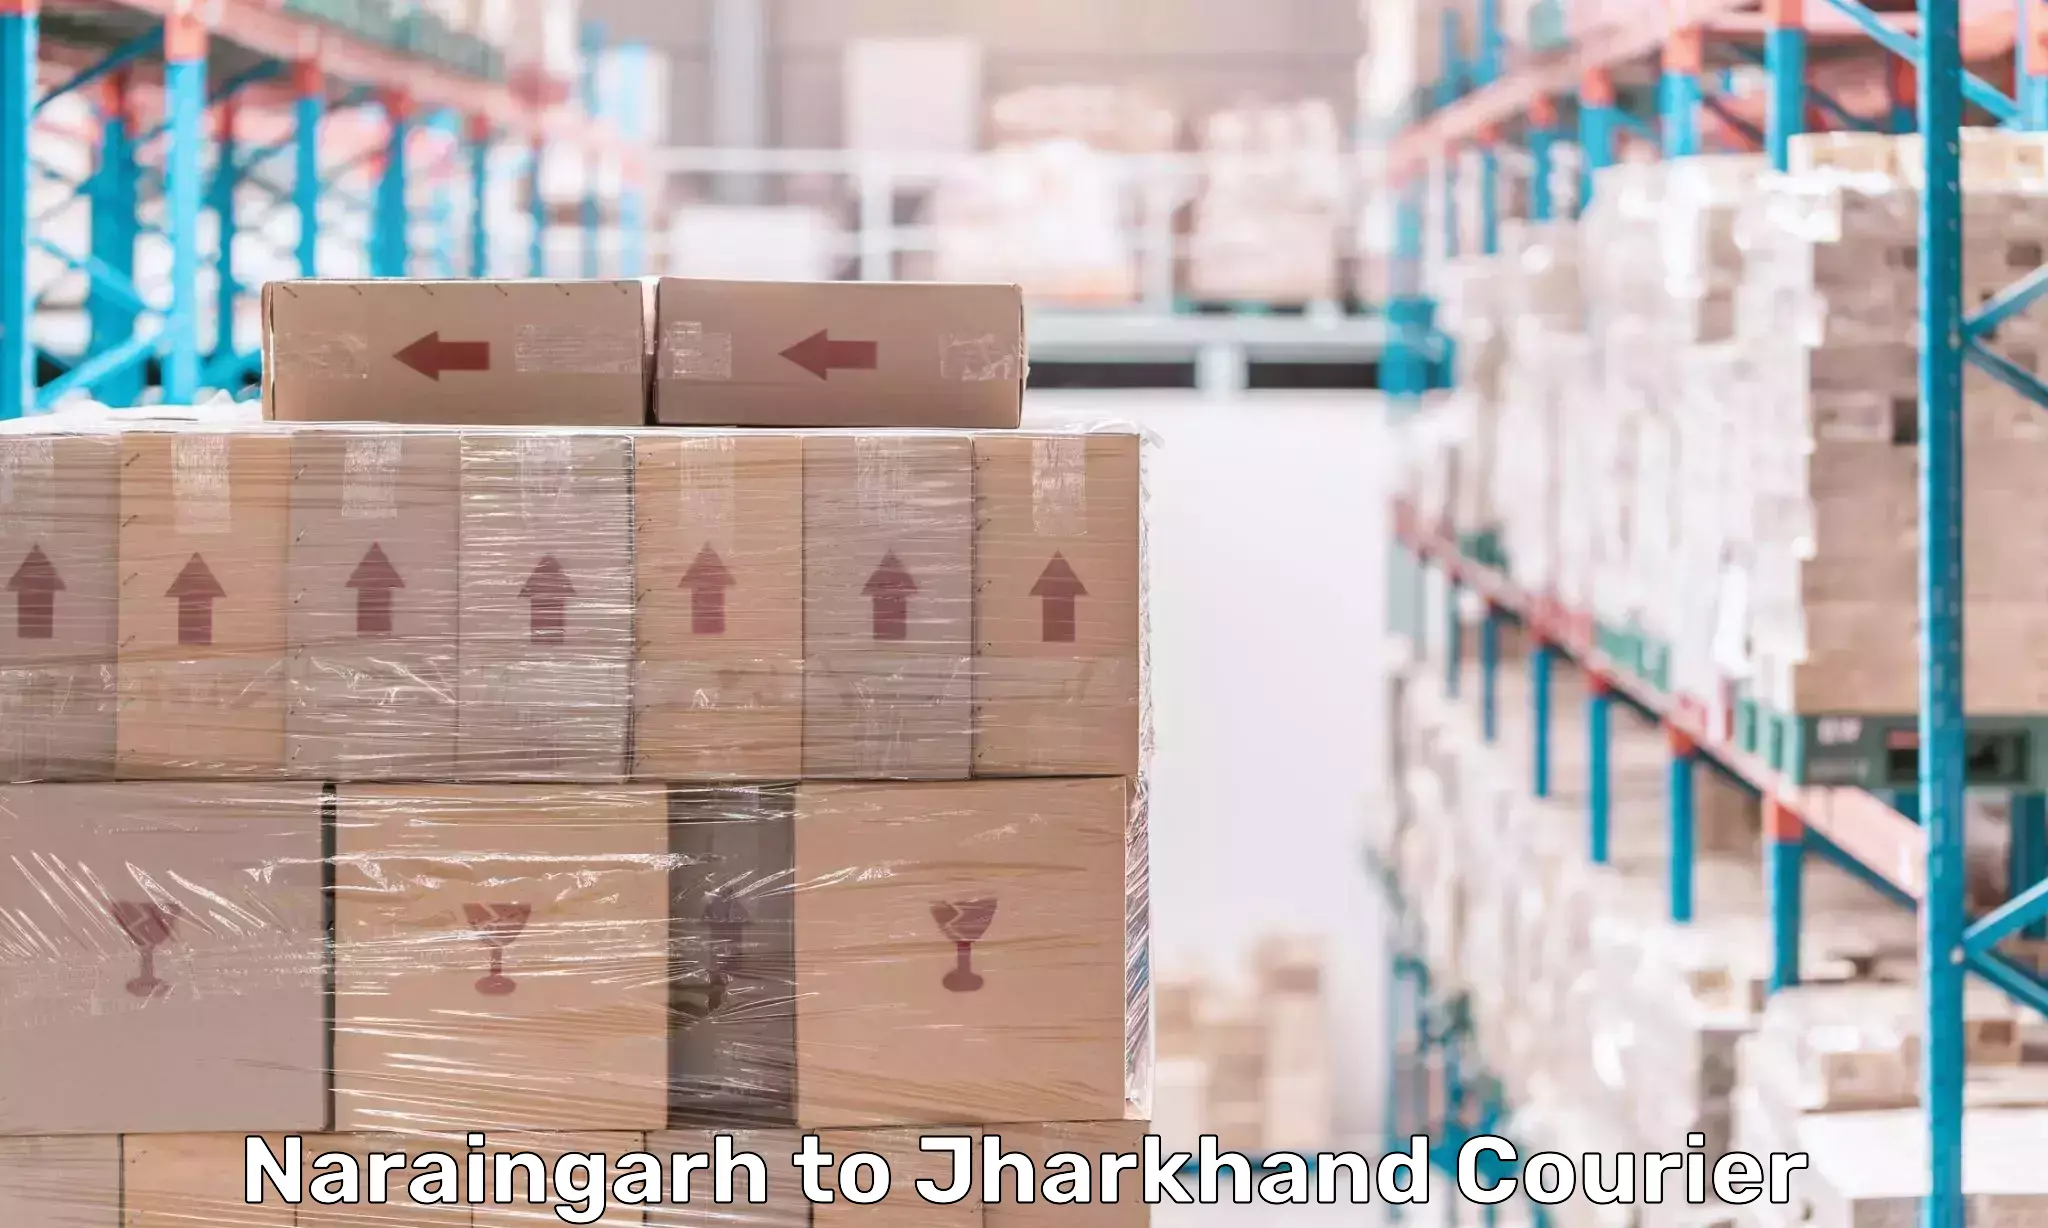 User-friendly courier app Naraingarh to Chandankiyari